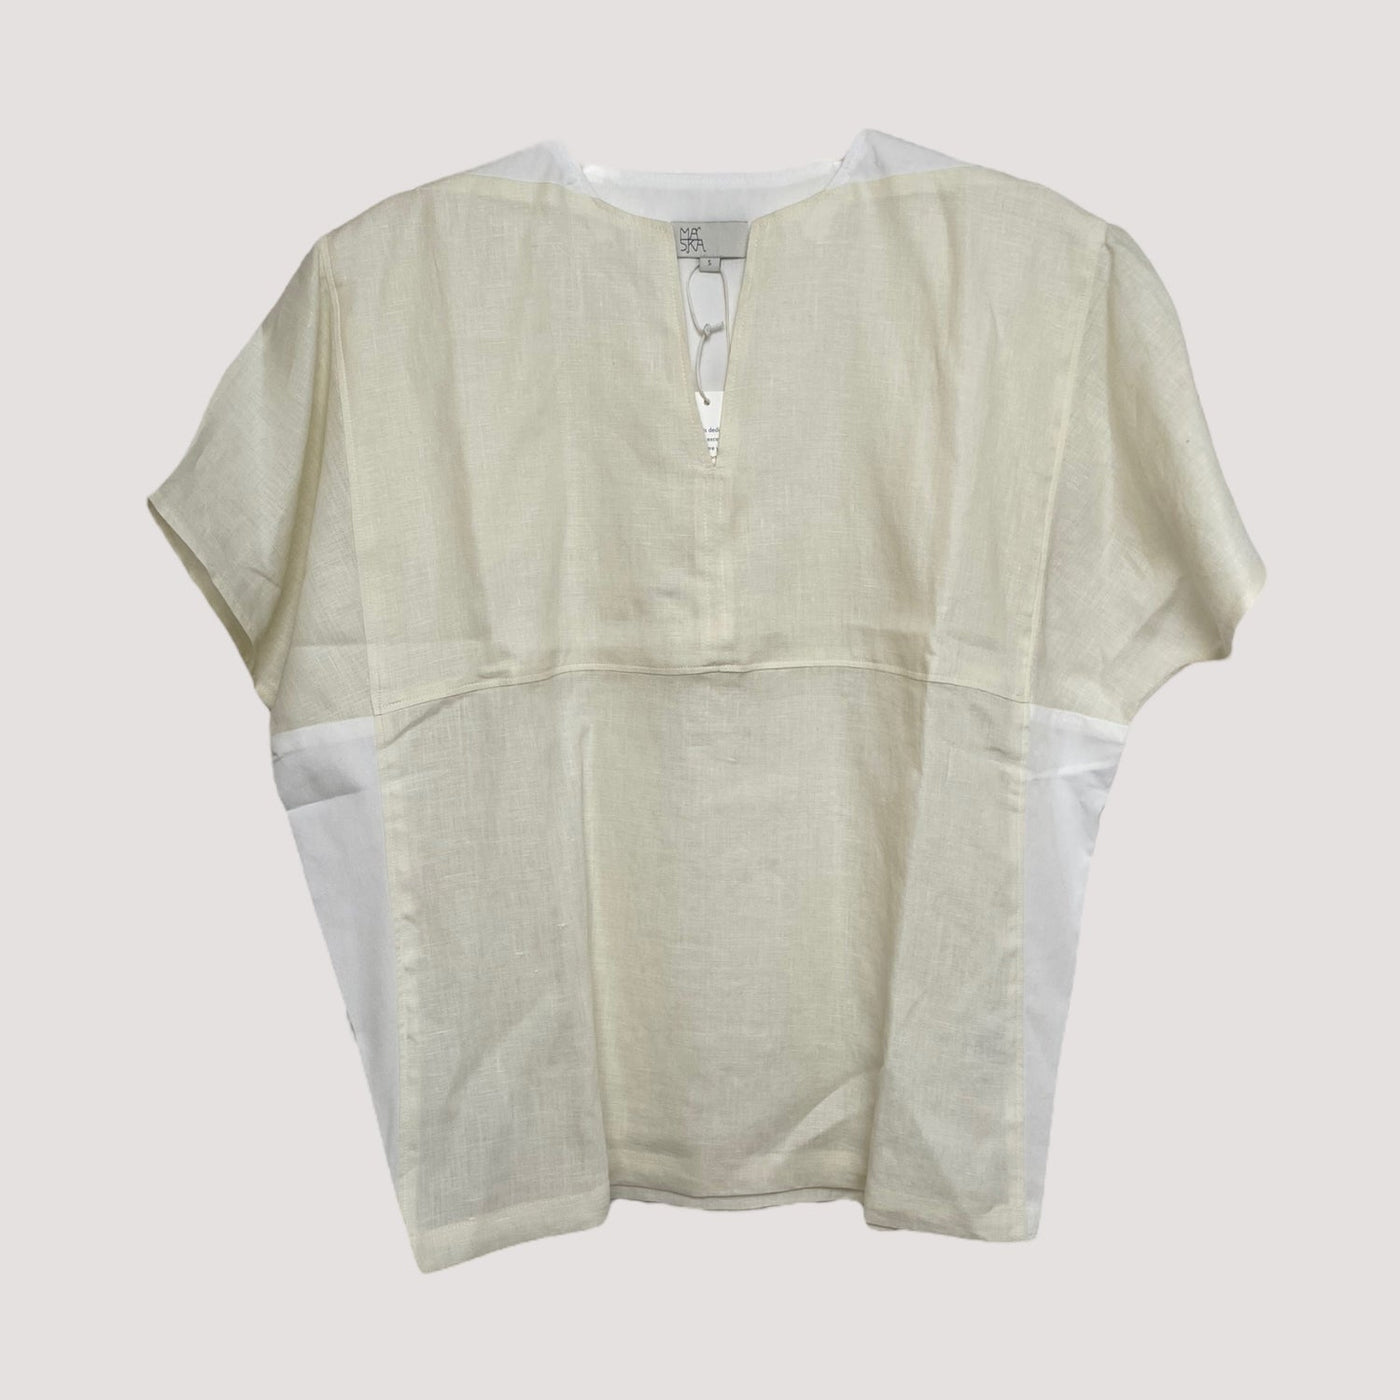 linen shirt, ivory/white | women S